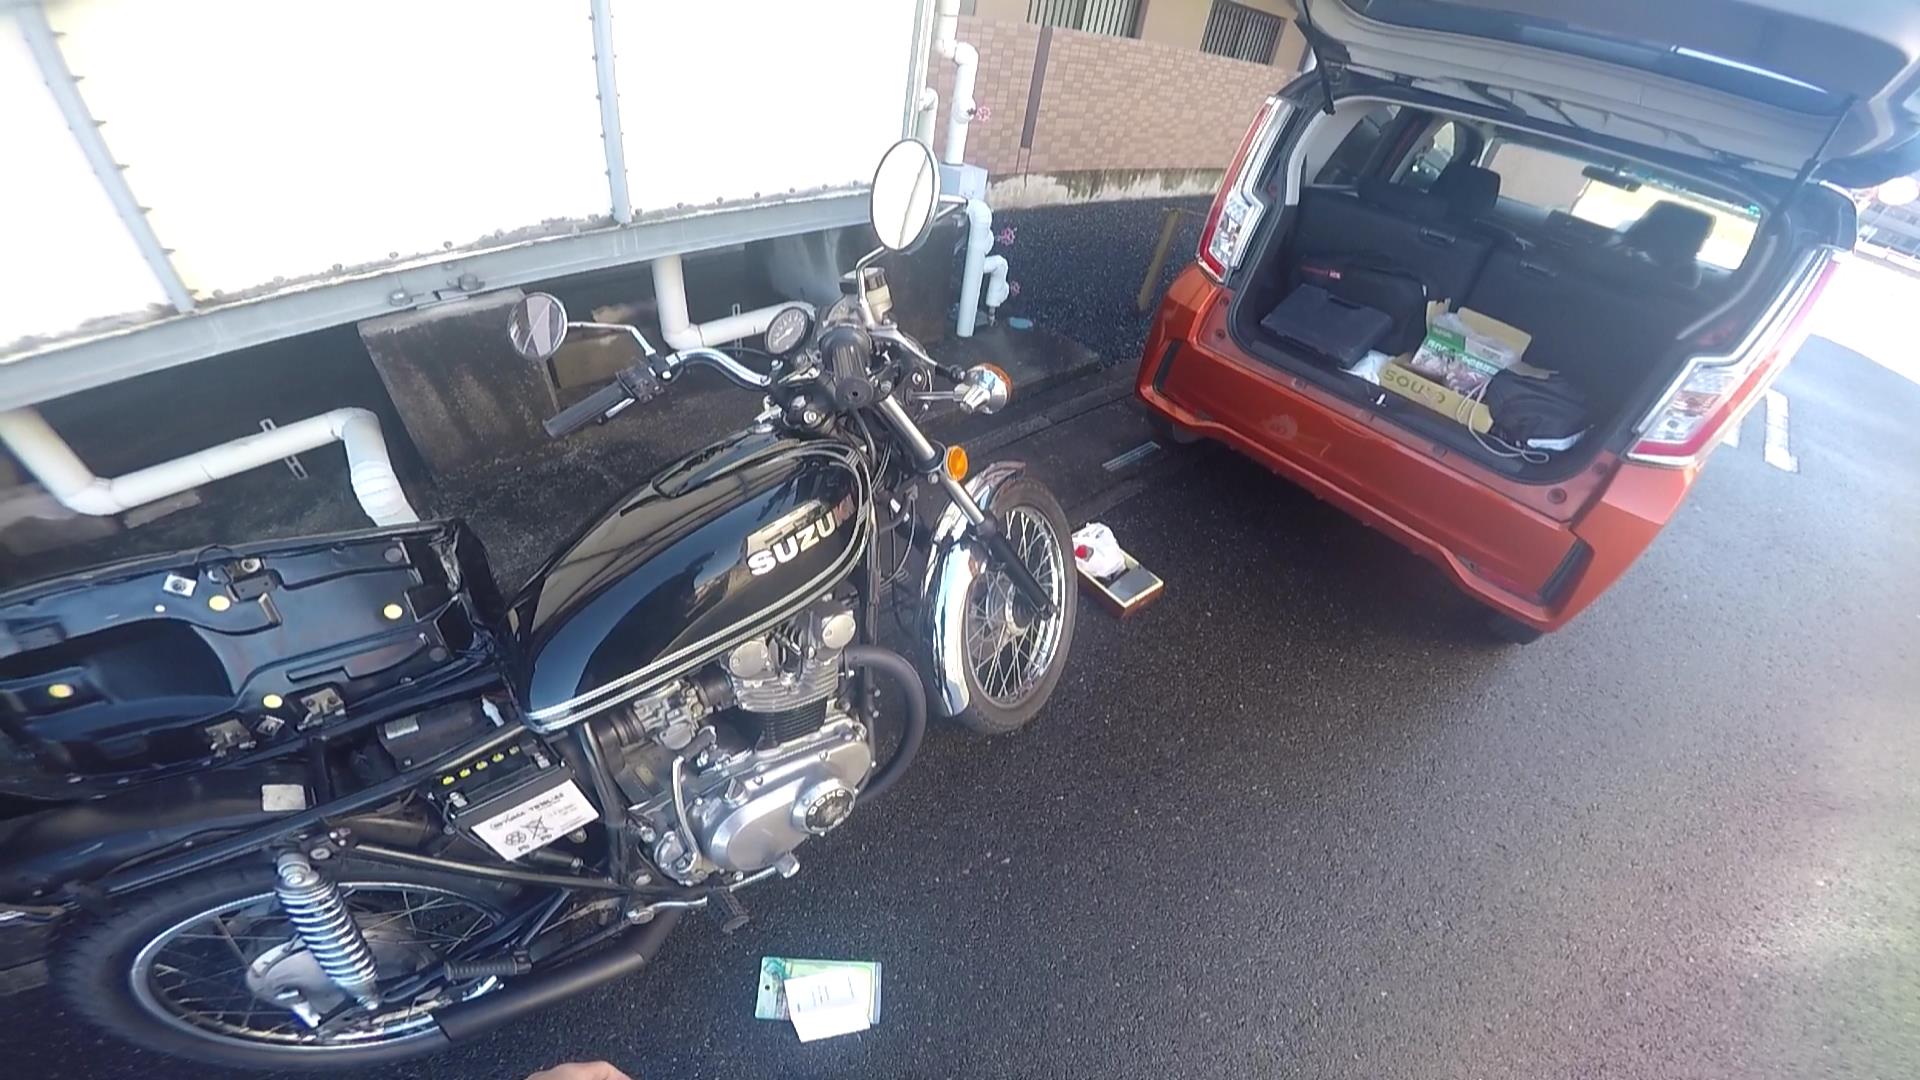 GS400:旧車バイクの納車整備について | GS400 旧車バイクのブログ@王鈴